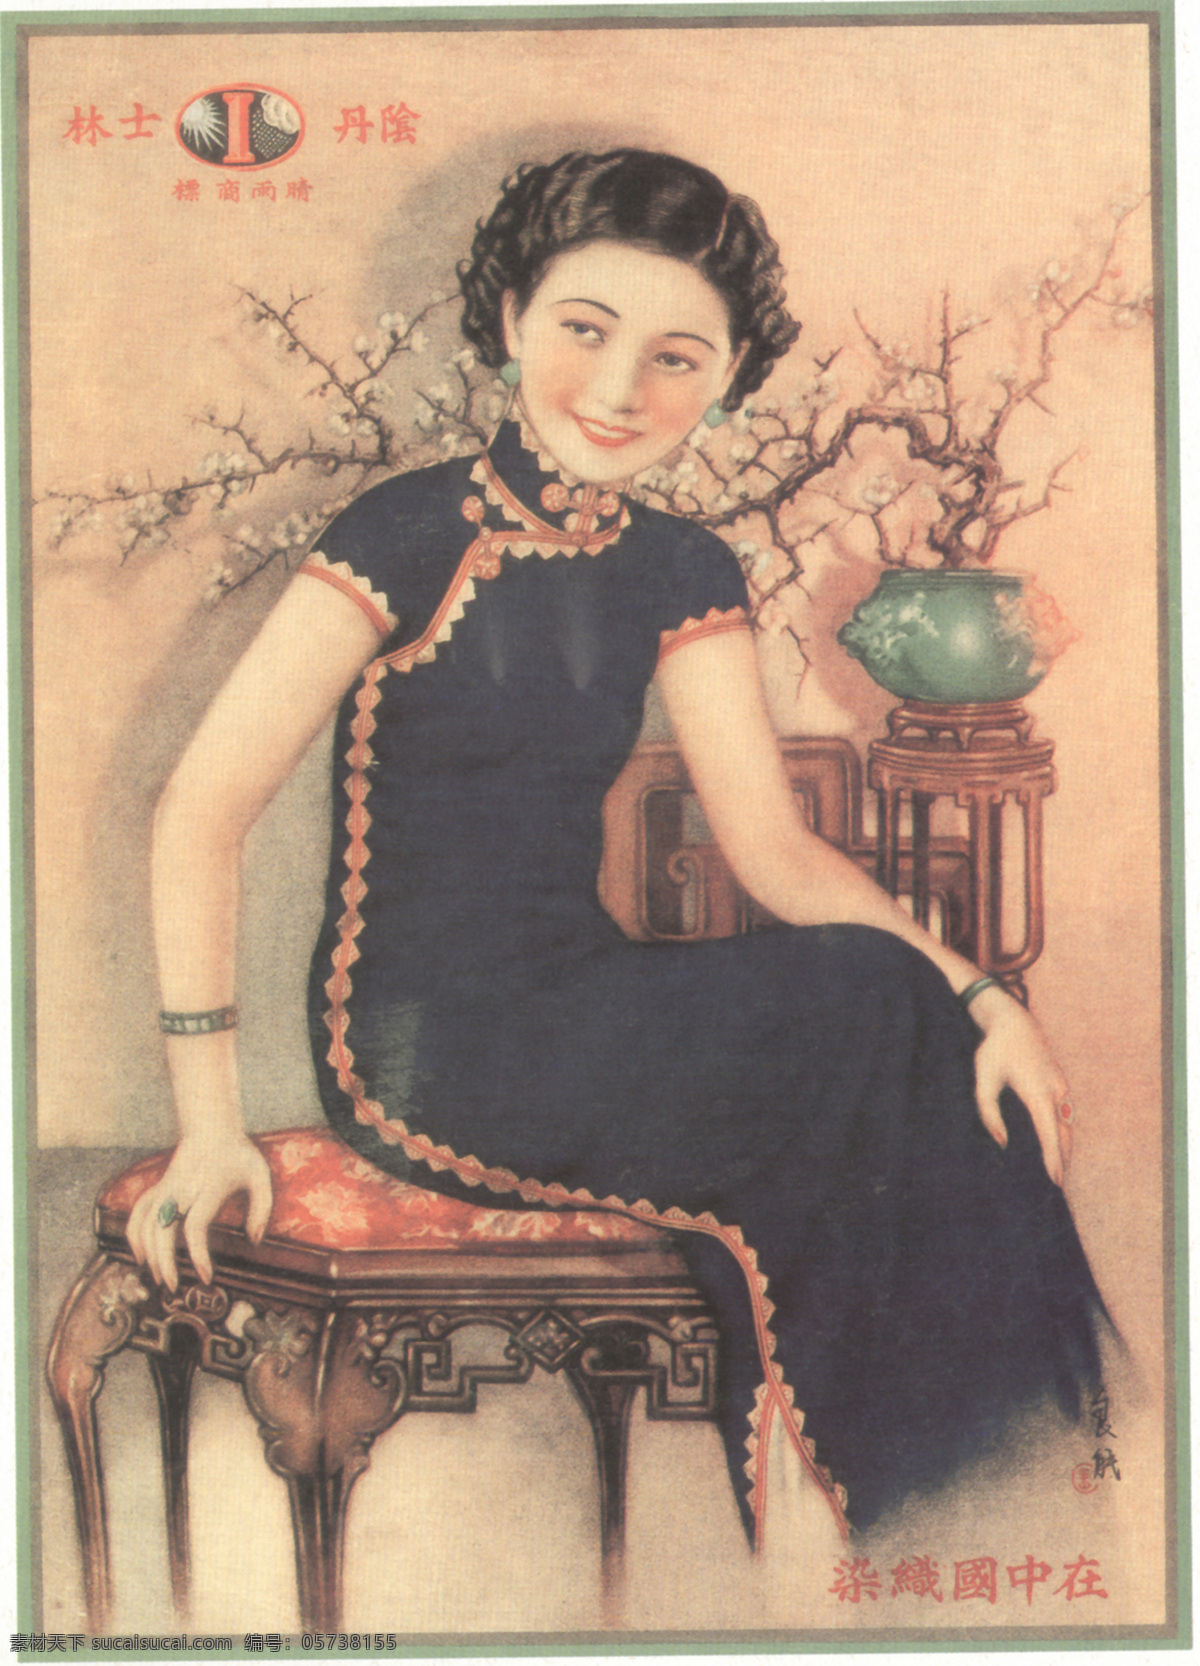 老 上海 月份 牌 广告 老广告 老上海 月份牌 大美女 香烟 老挂历 文化艺术 绘画书法 设计图库